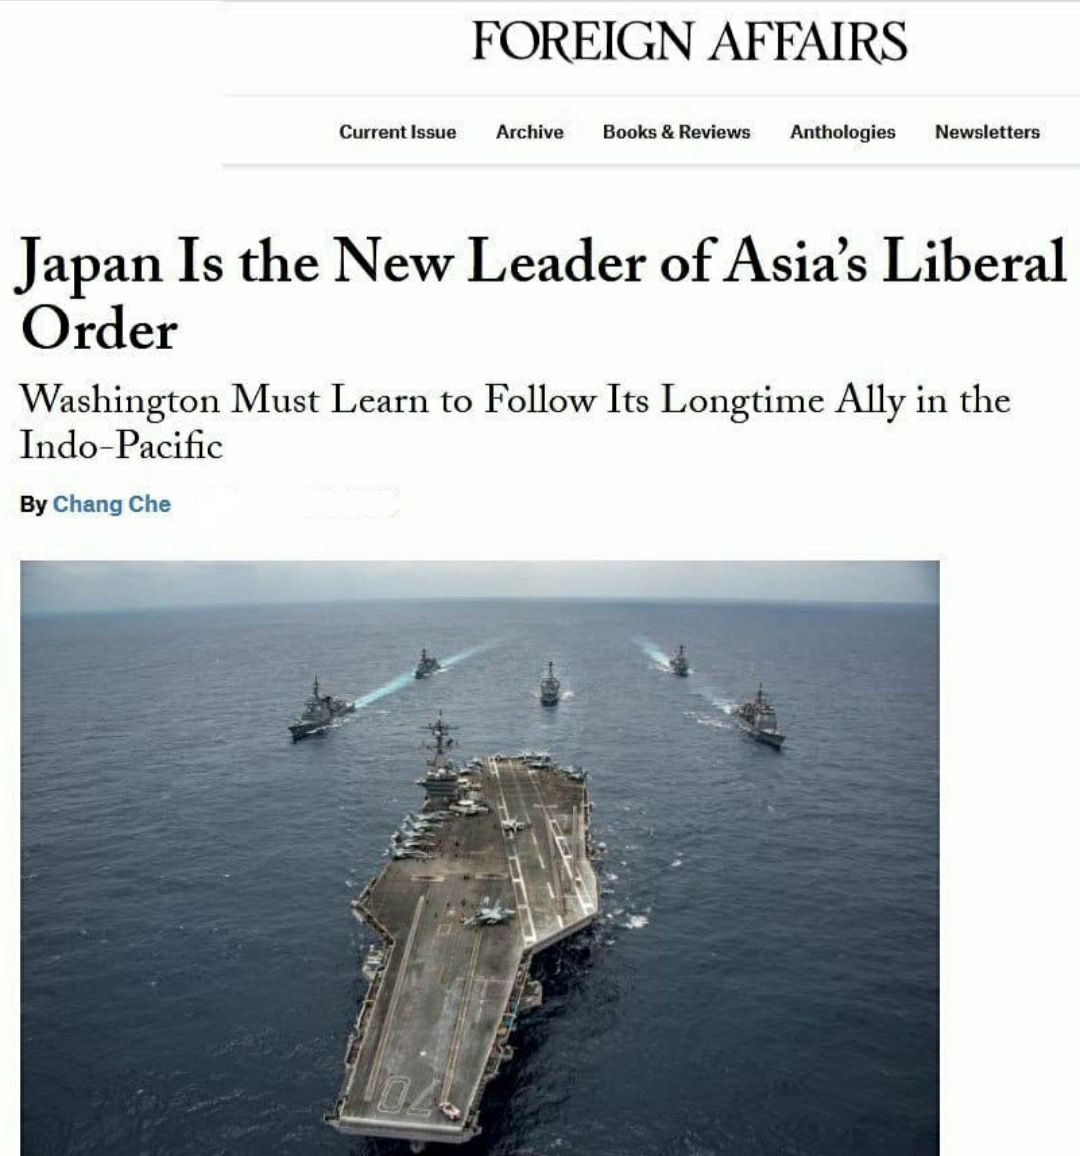 ژاپن کلید بازیابی اعتبار آمریکا در آسیا